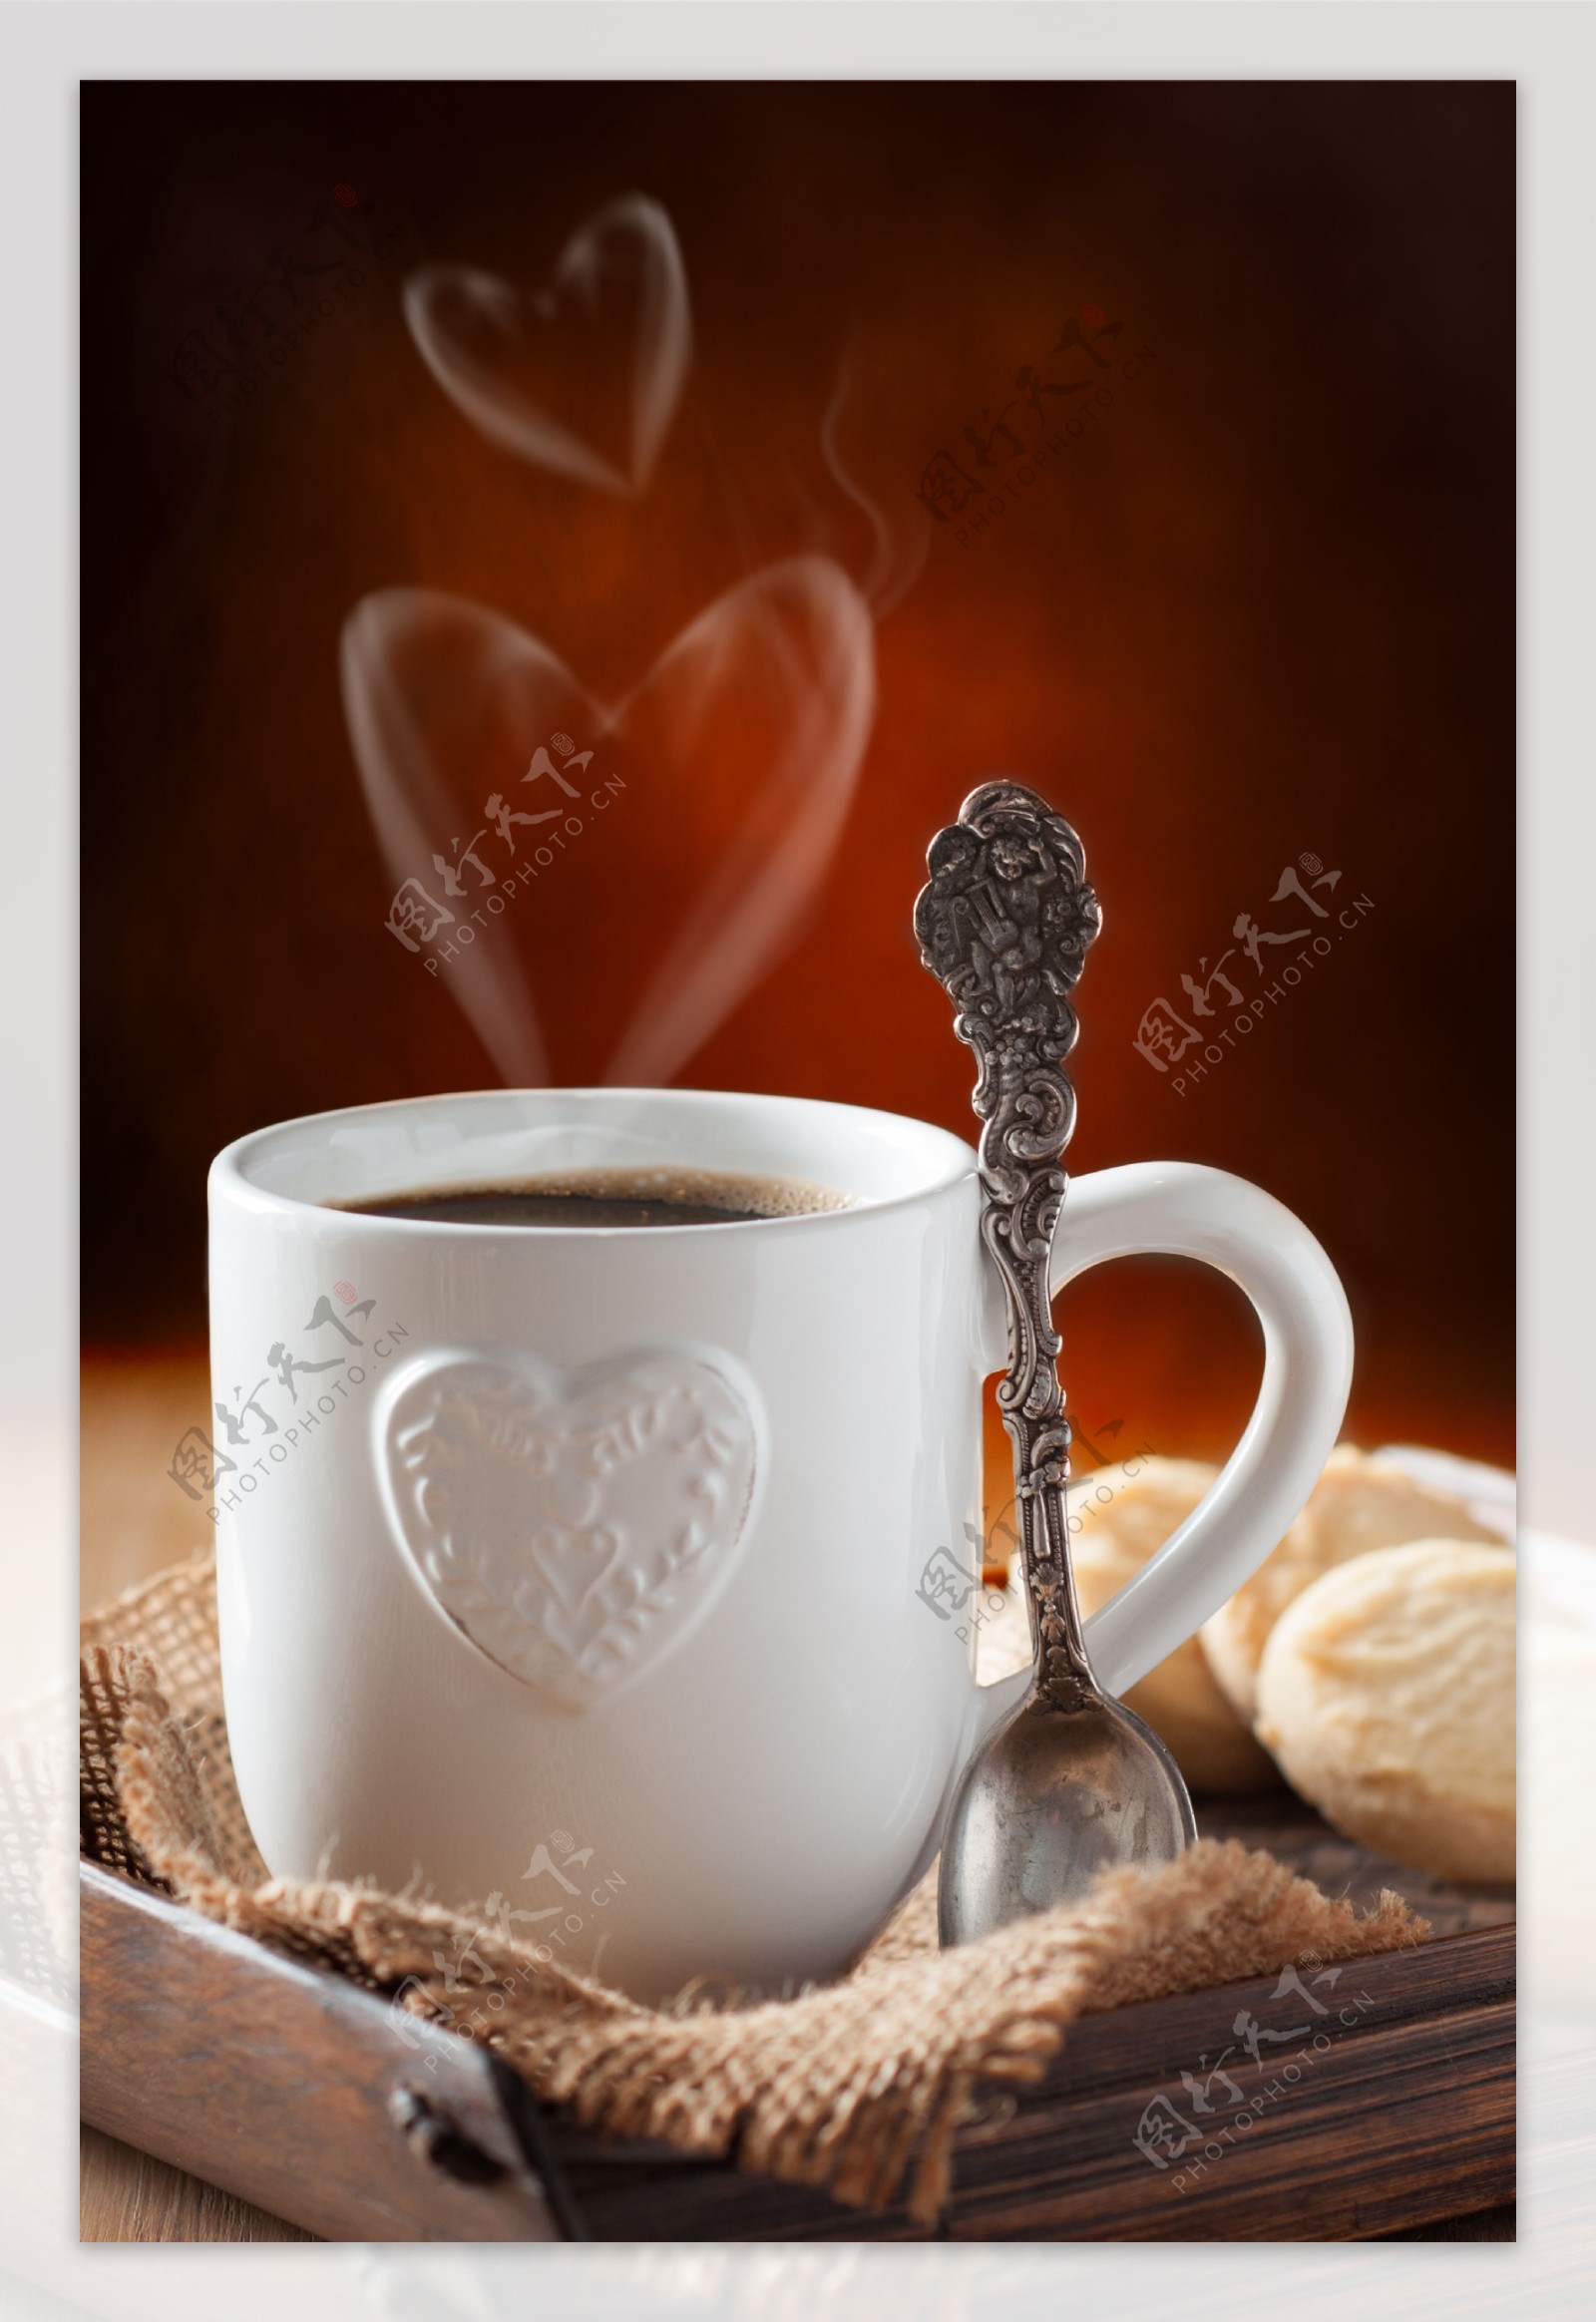 咖啡杯与勺子图片